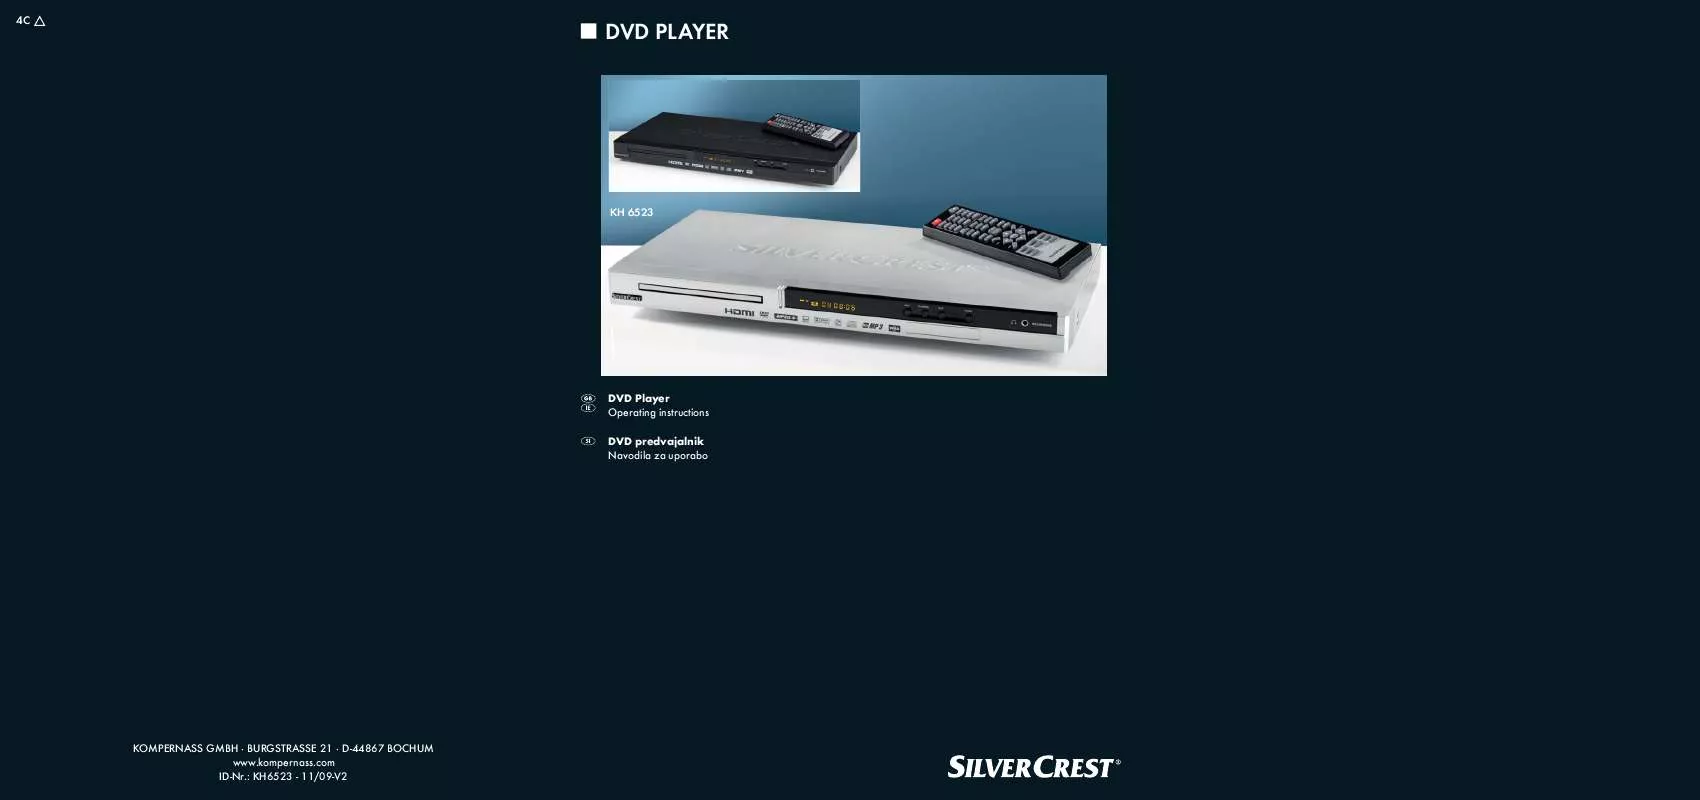 Mode d'emploi SILVERCREST KH 6523 DVD-PLAYER